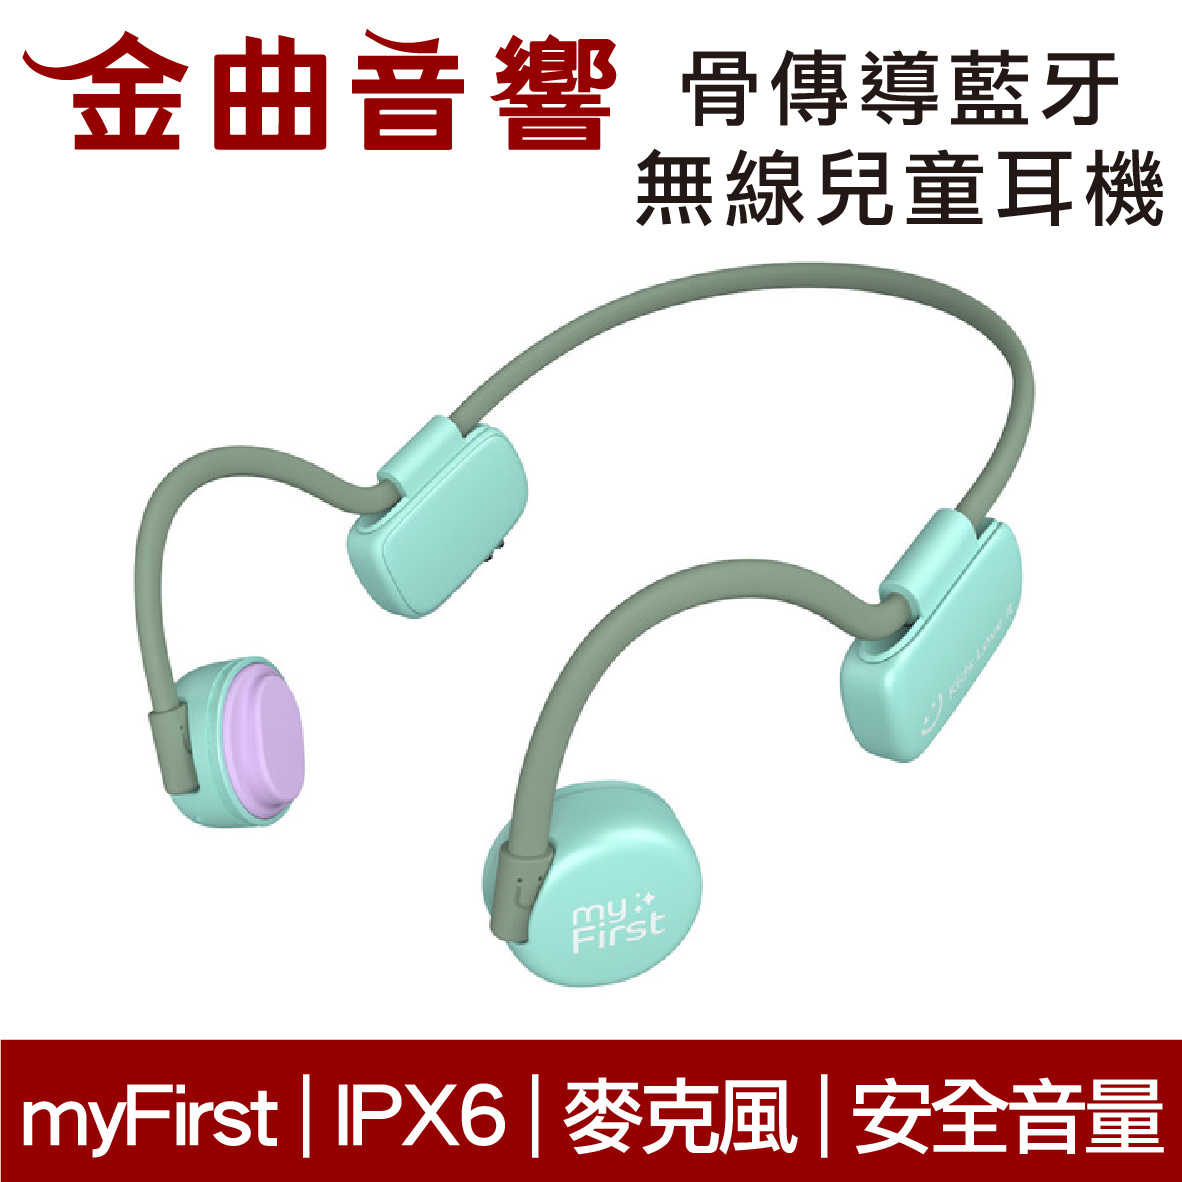 myFirst 骨傳導 無線 兒童耳機 綠色 IPX6 安全音量 內建麥克風 藍牙5.0 | 金曲音響